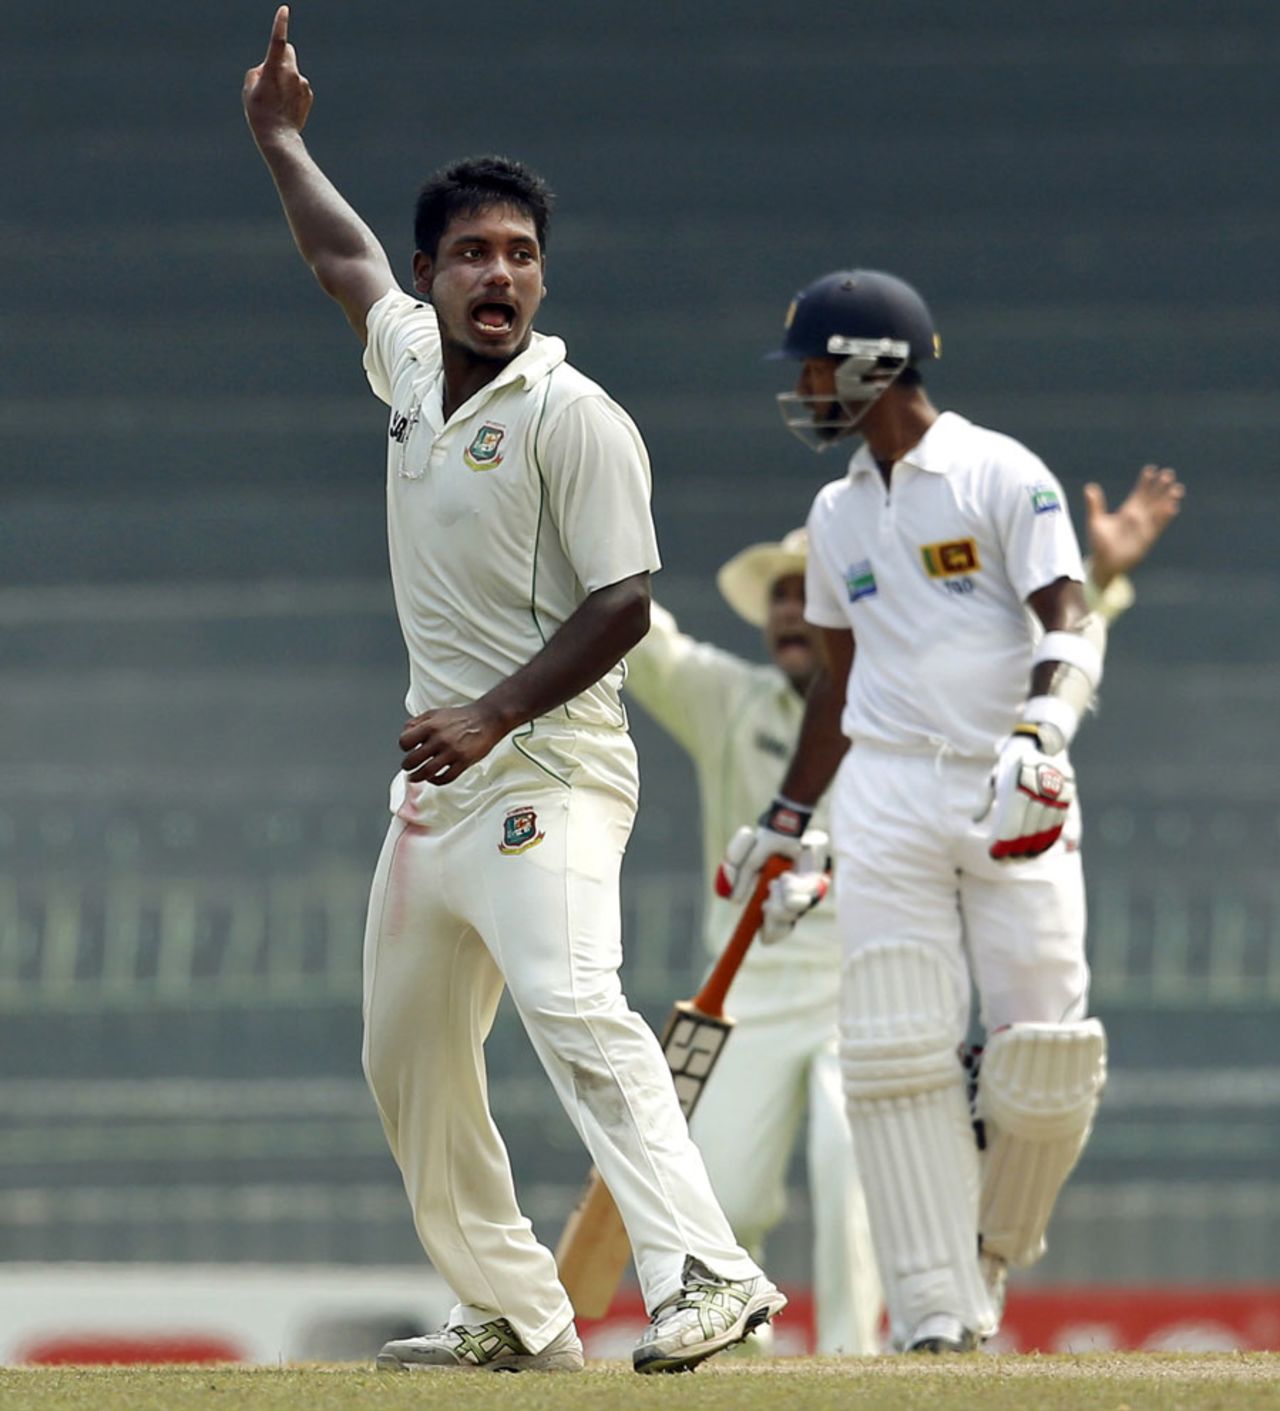 Abul Hasan got the big wicket of Kumar Sangakkara, Sri Lanka v Bangladesh, 2nd Test, Colombo, 3rd day, March 18, 2013